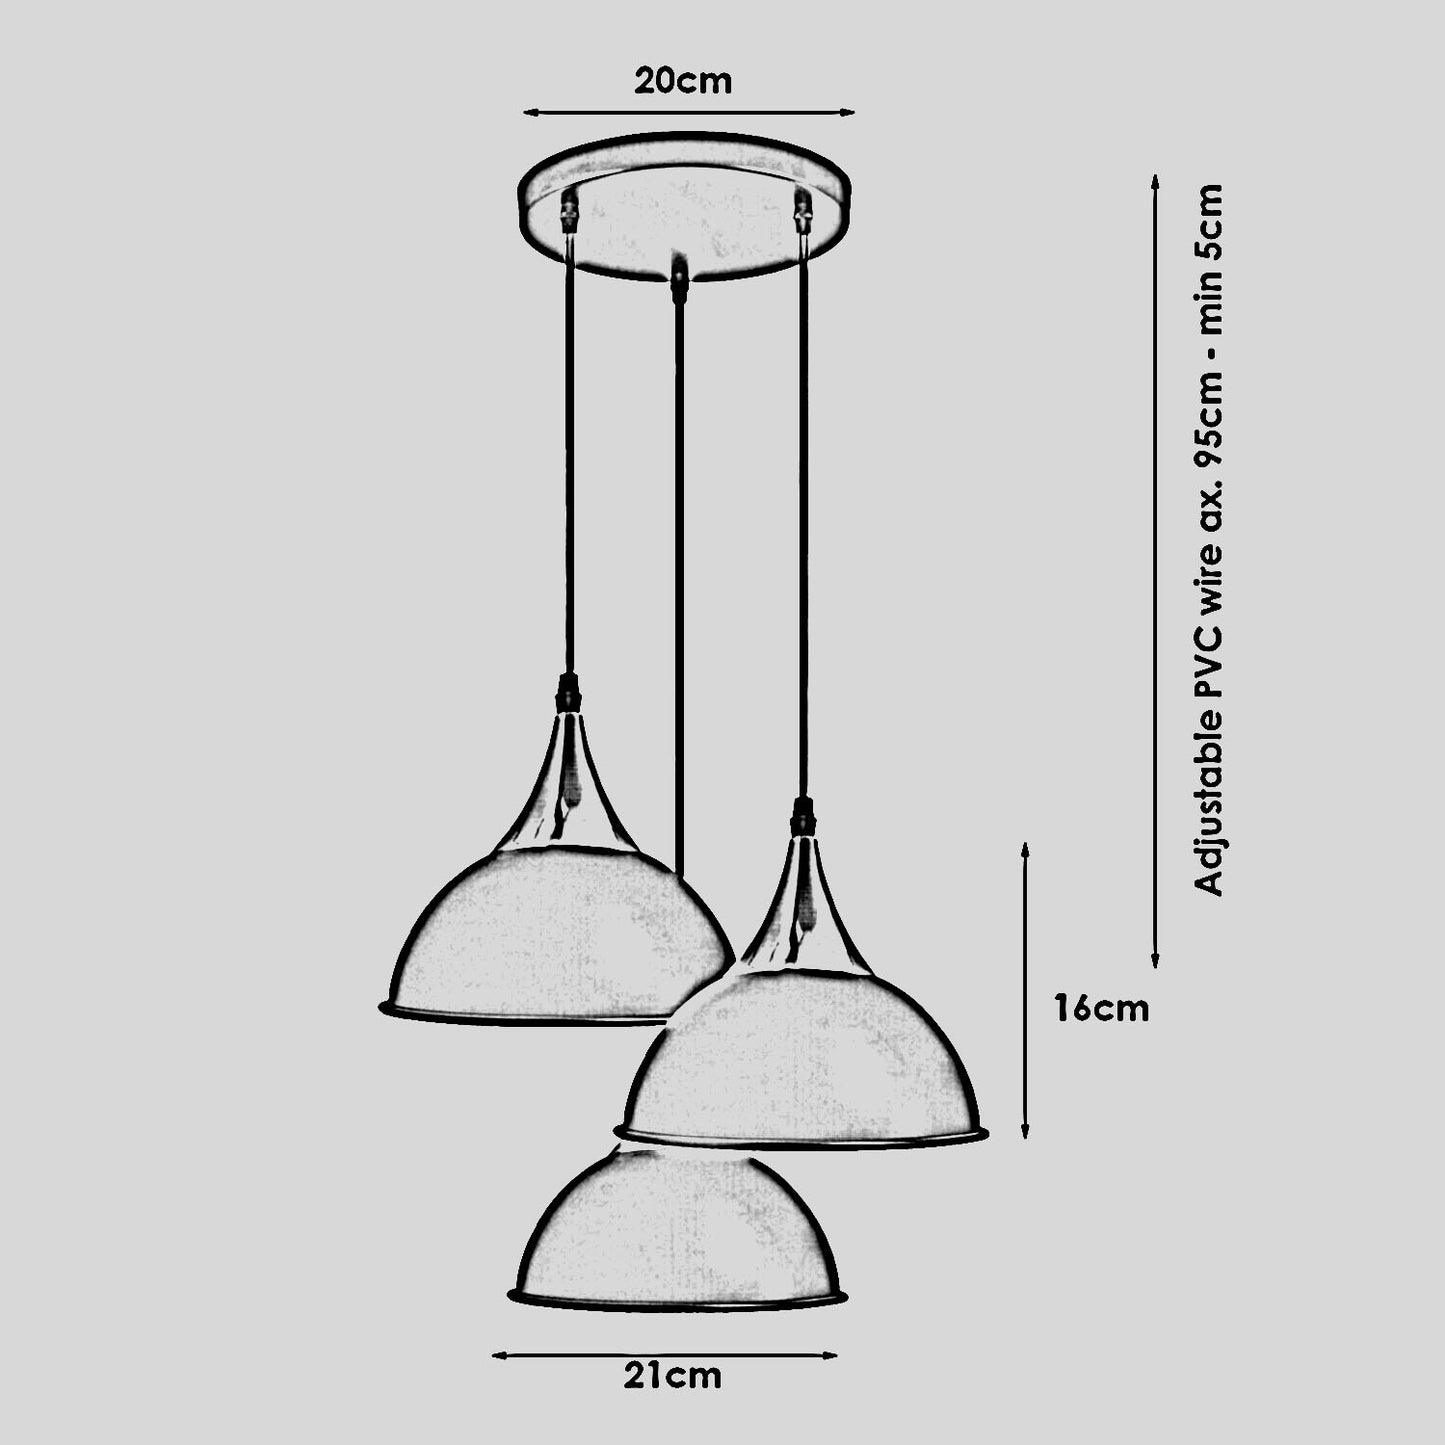 3-Wege-Vintage-Lampenschirm aus Metall, modern, zum Aufhängen, Retro-Deckenpendelleuchten, grün